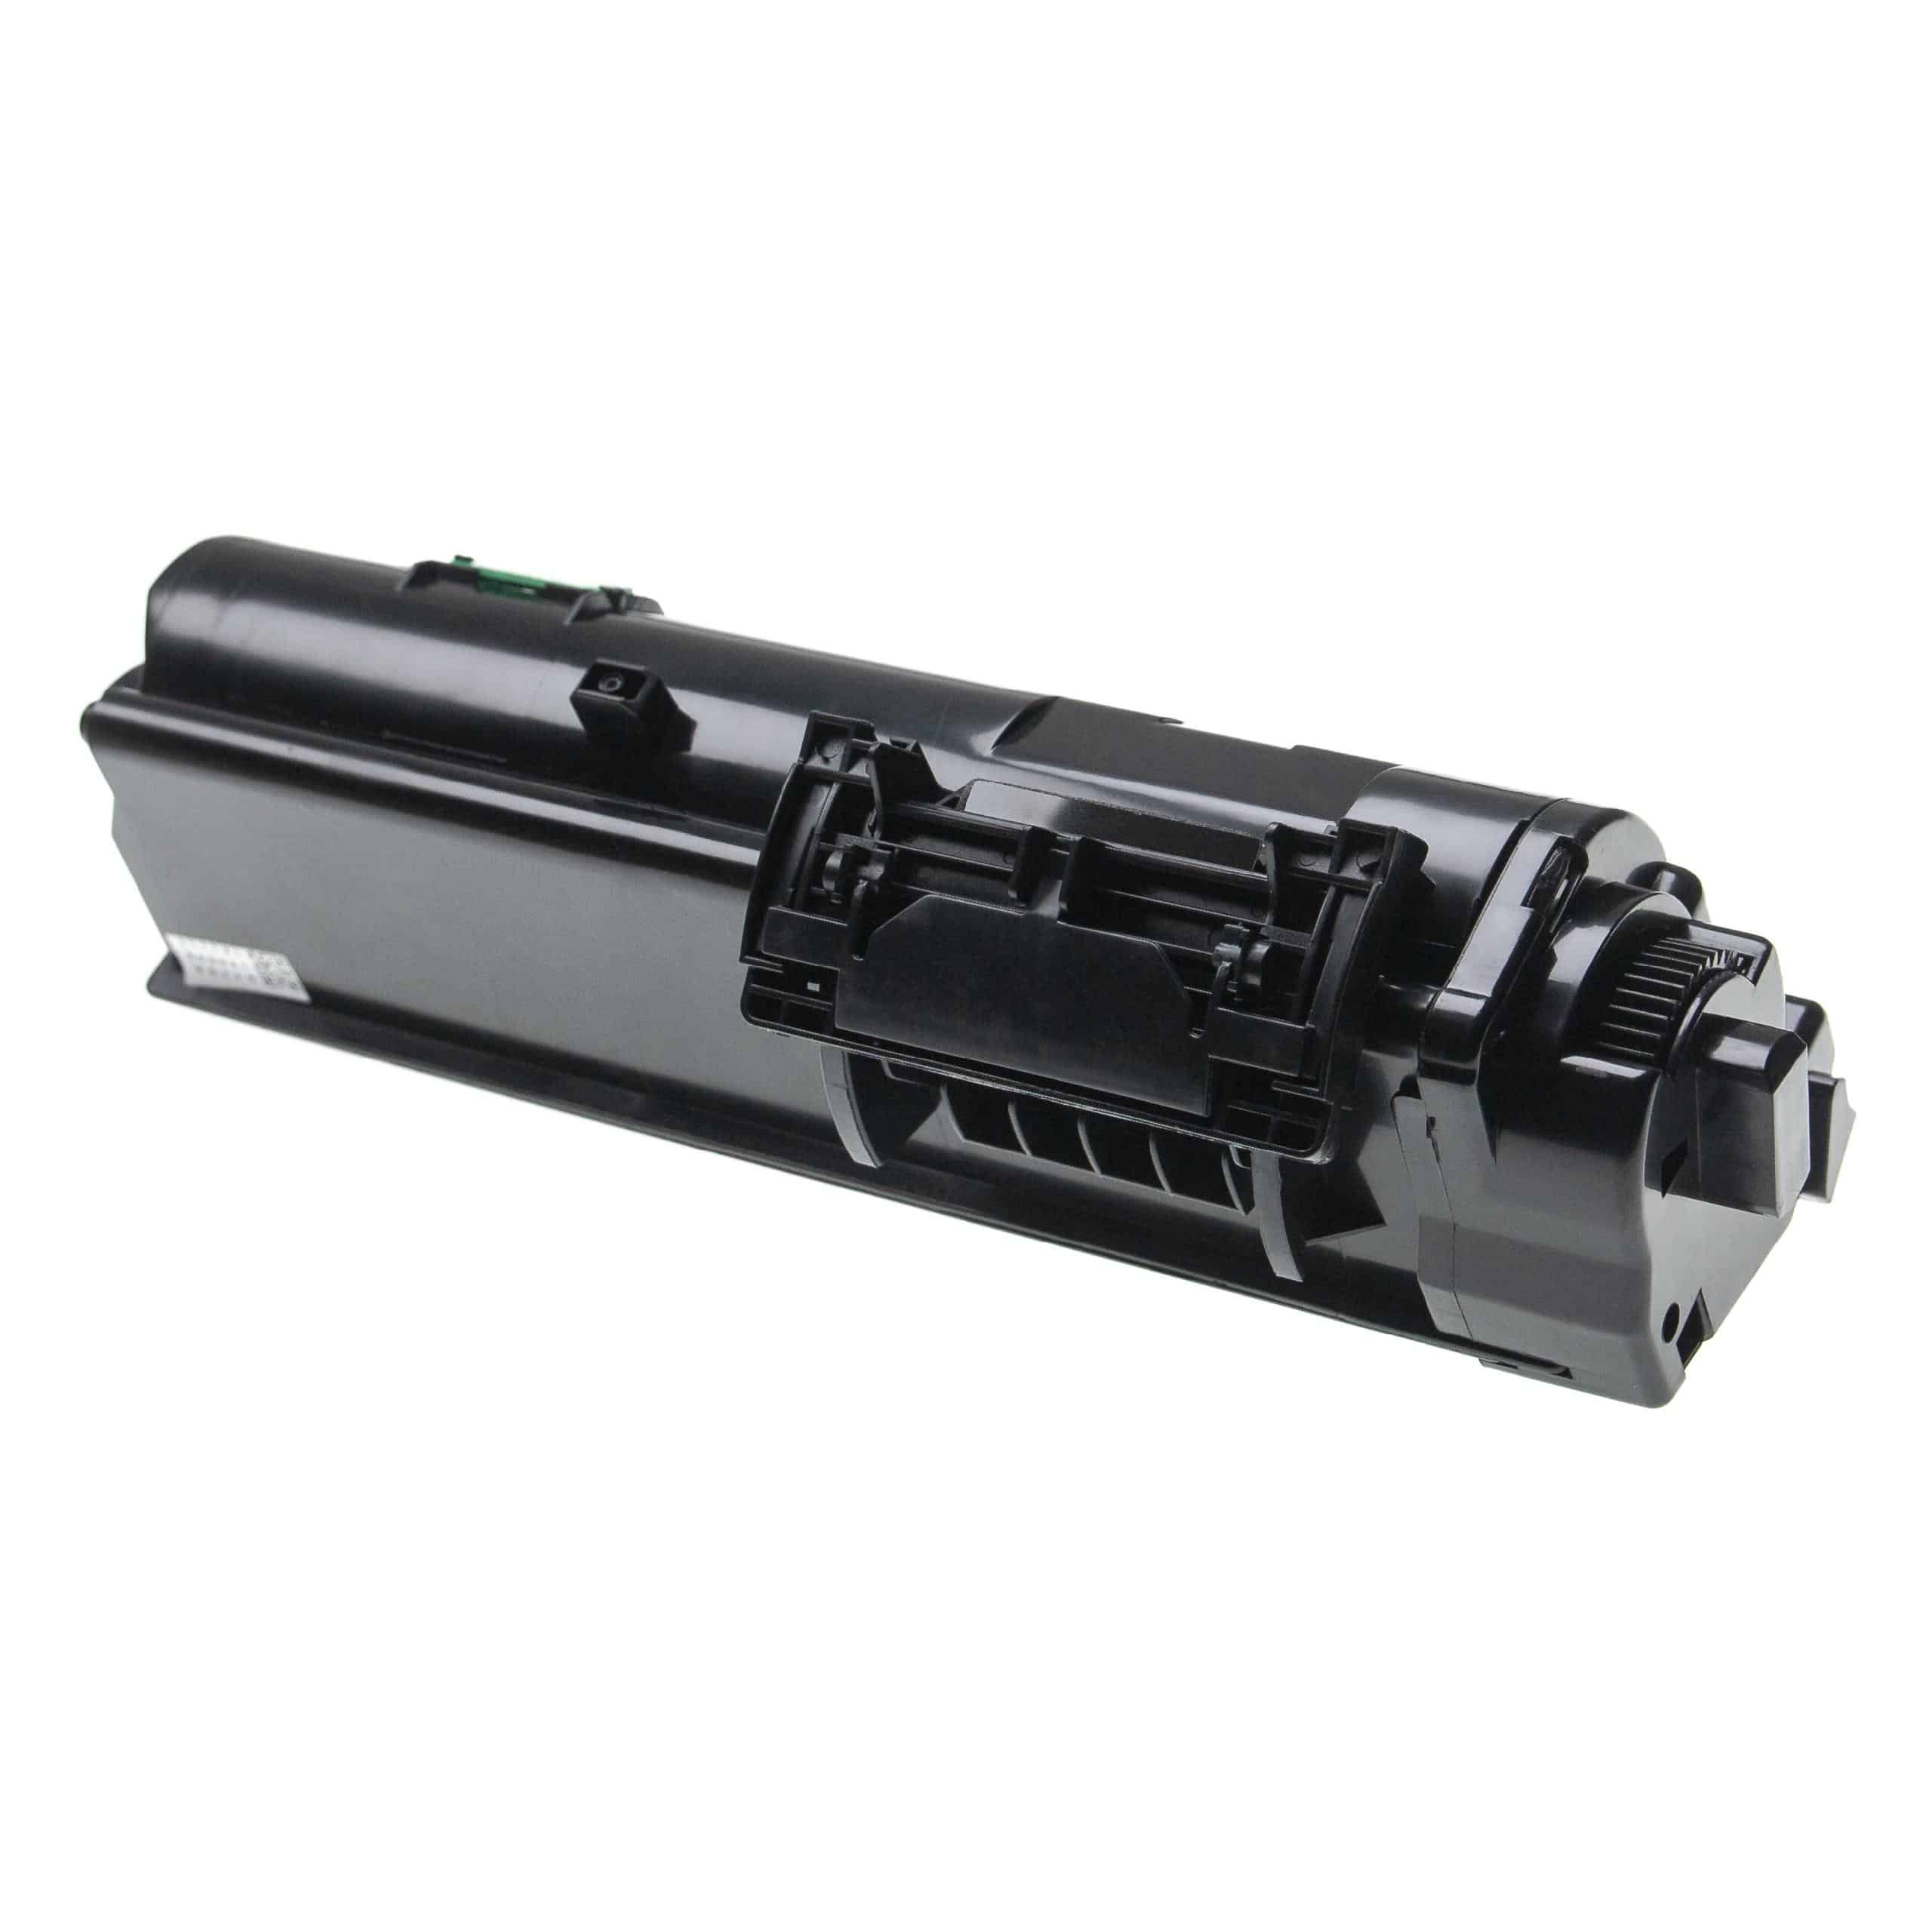 5x Toner als Ersatz für Kyocera TK-1150 für Kyocera Drucker, Schwarz